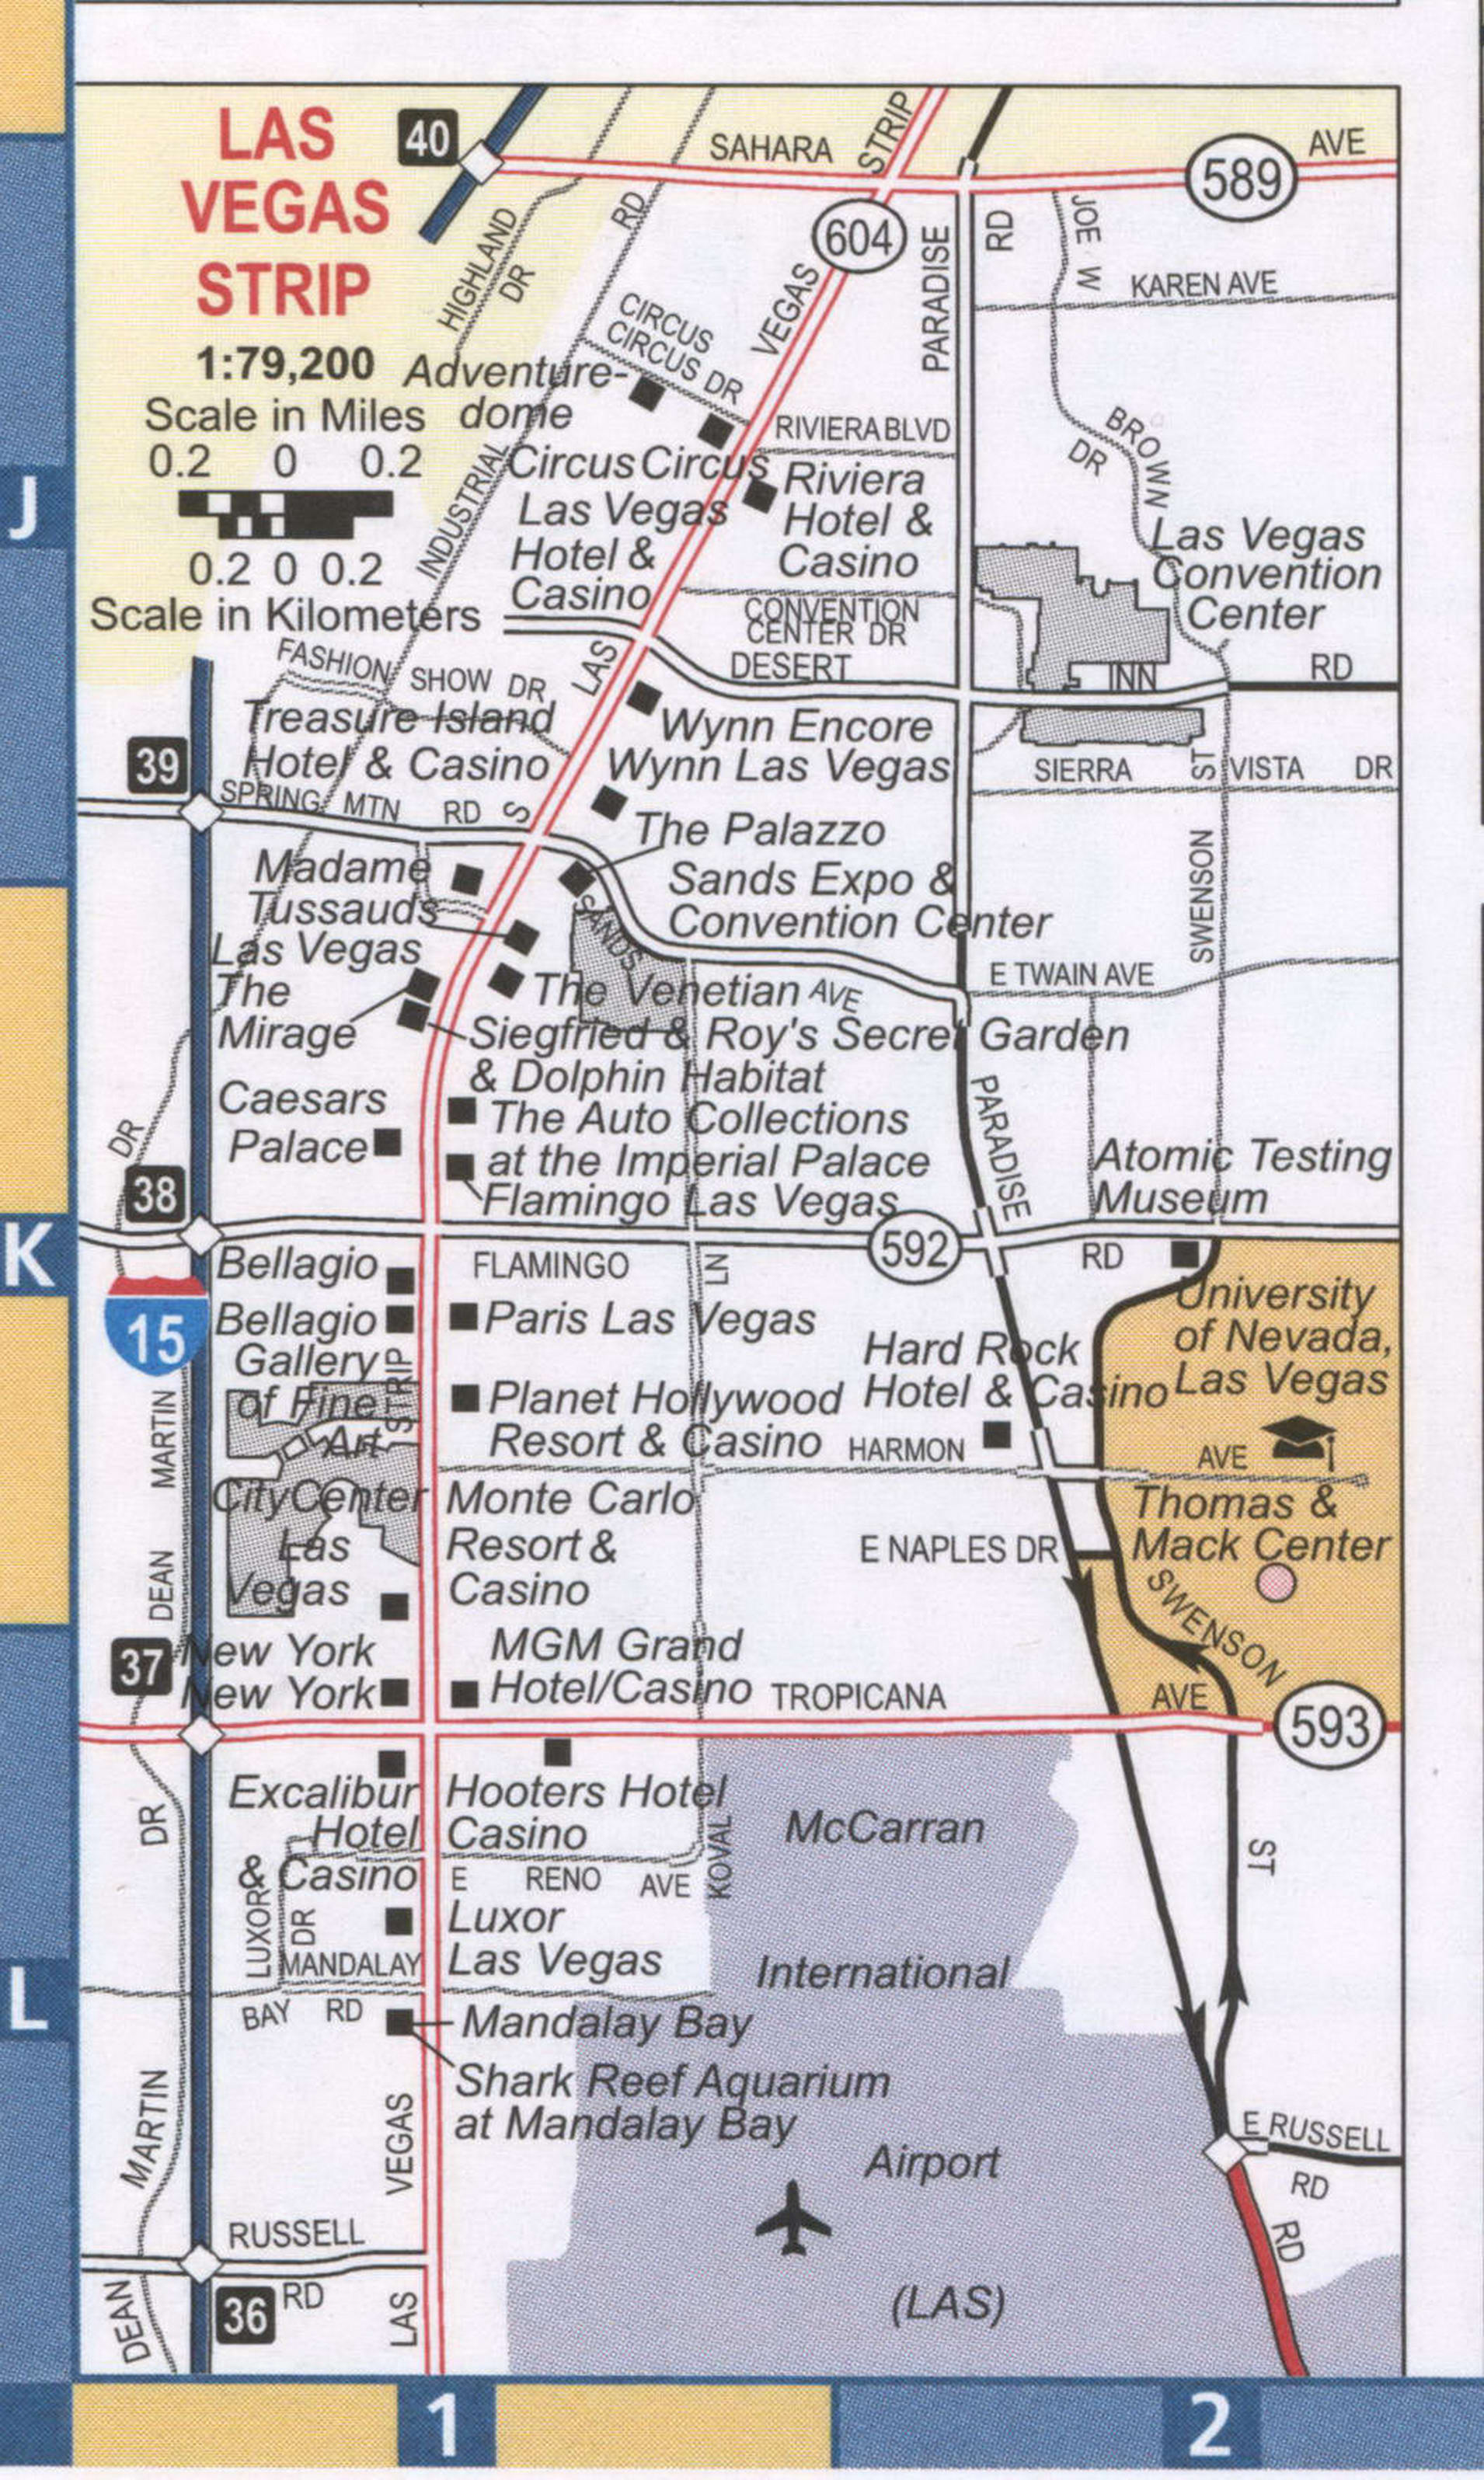 Las Vegas Strip Nv Road Map Highway Las Vegas Strip Surrounding Area